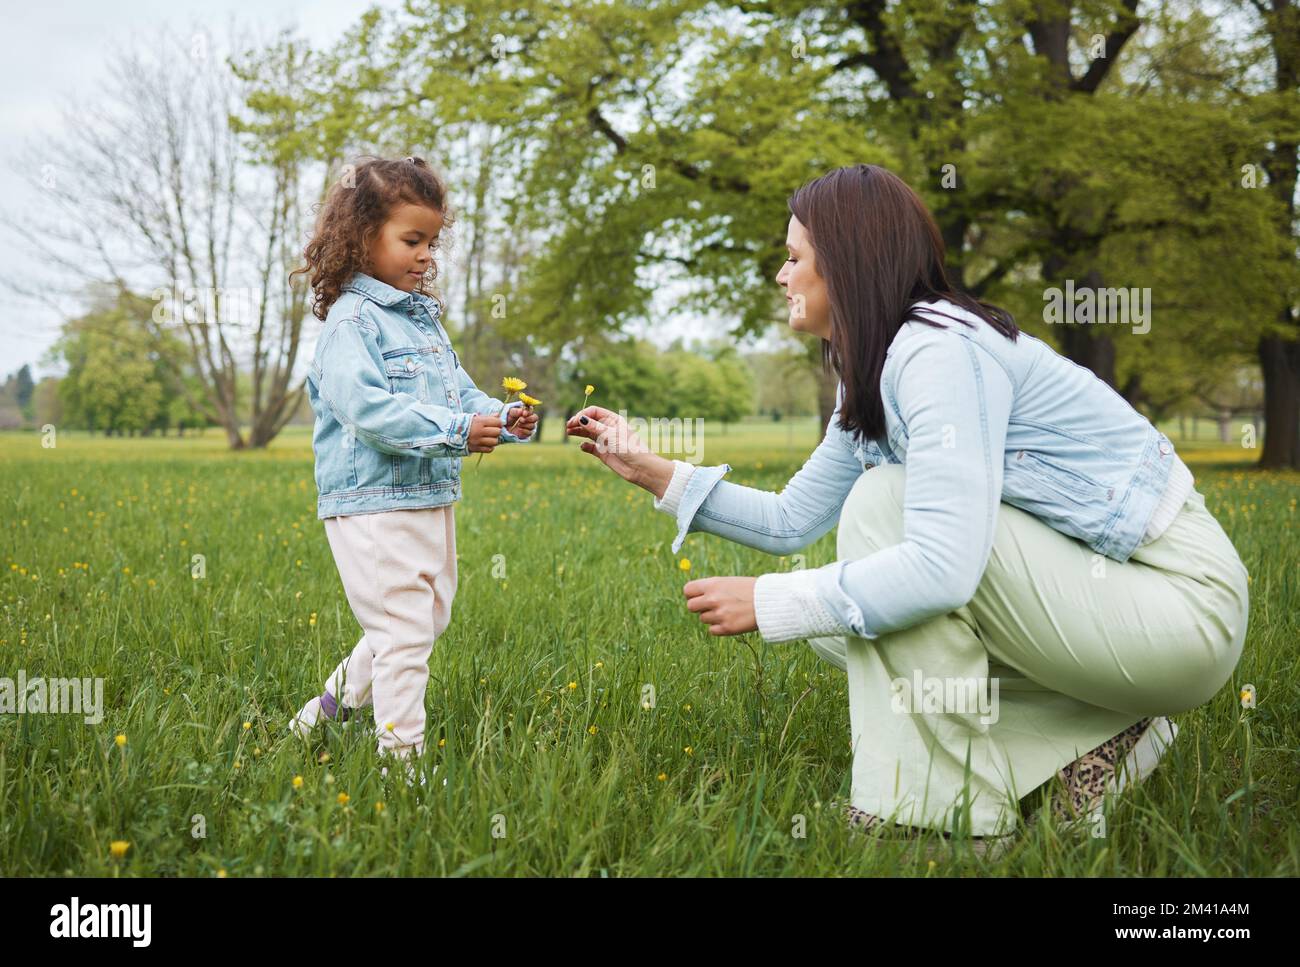 Familie, Park und Blüte mit einer Mutter und einem Mädchen, die sich im Sommer oder Frühling auf einem Grasfeld zusammentun. Natur, Liebe und Kinder mit einer Frau Stockfoto